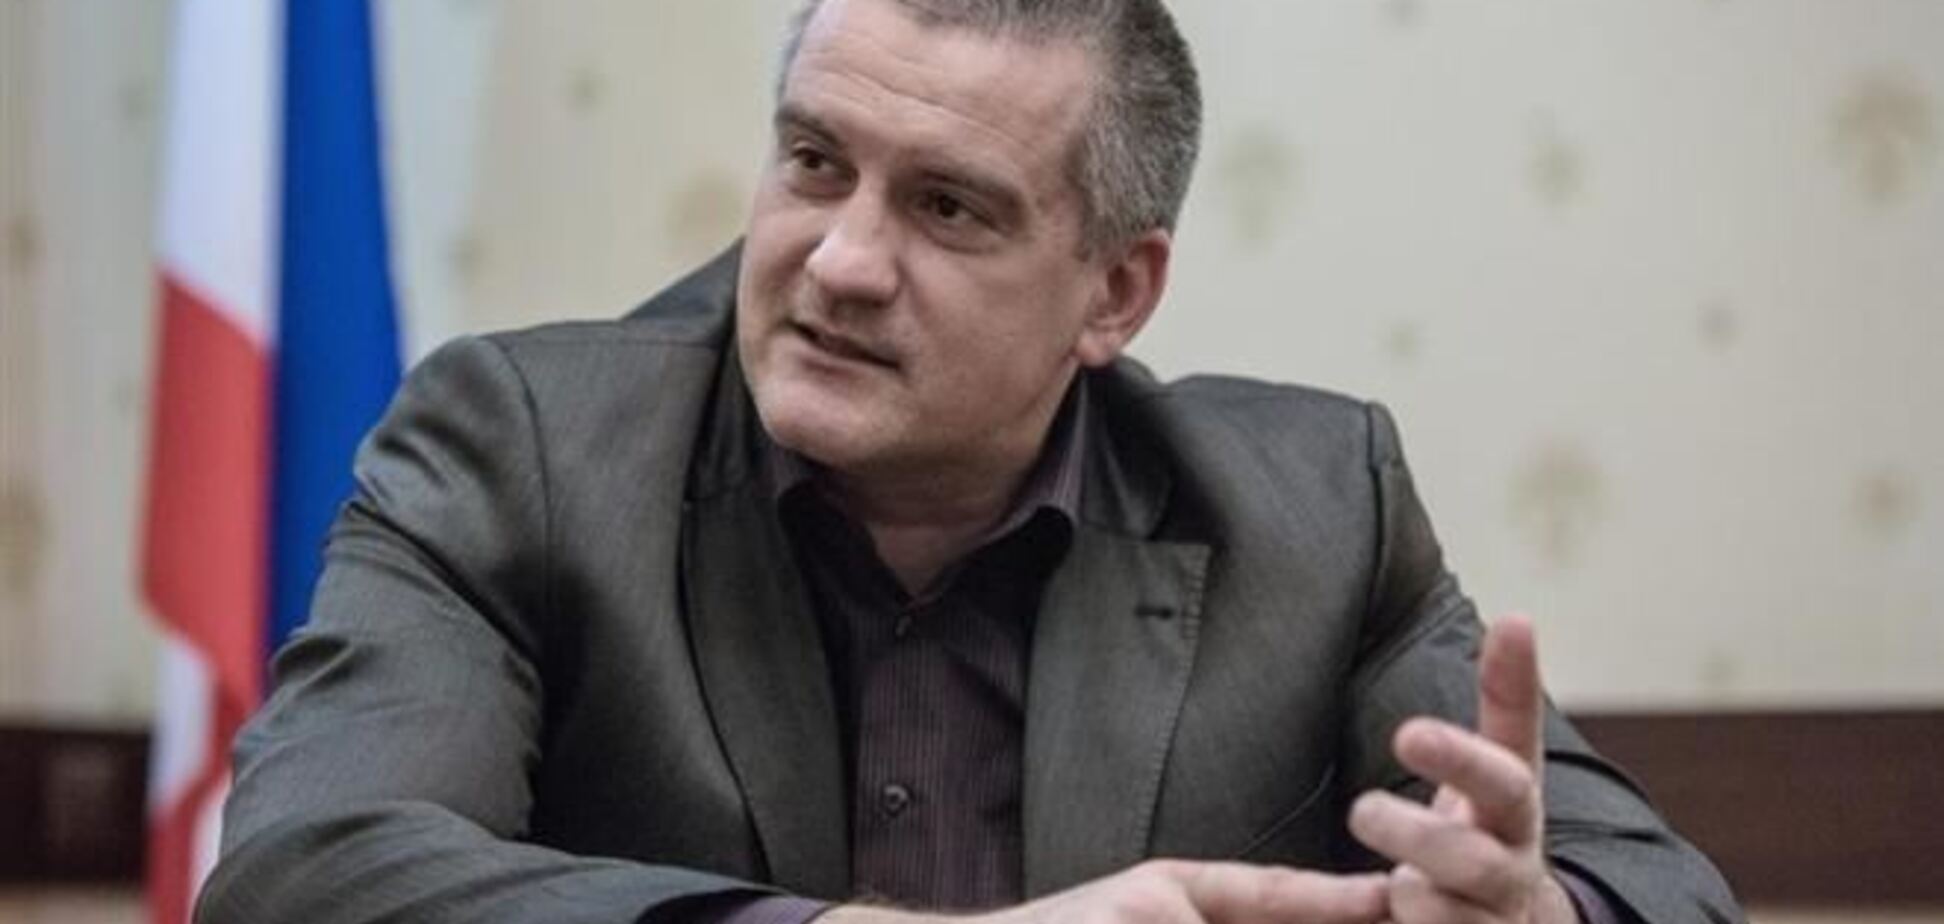 Аксенов утверждает, что ему предлагали пост вице-премьера Украины